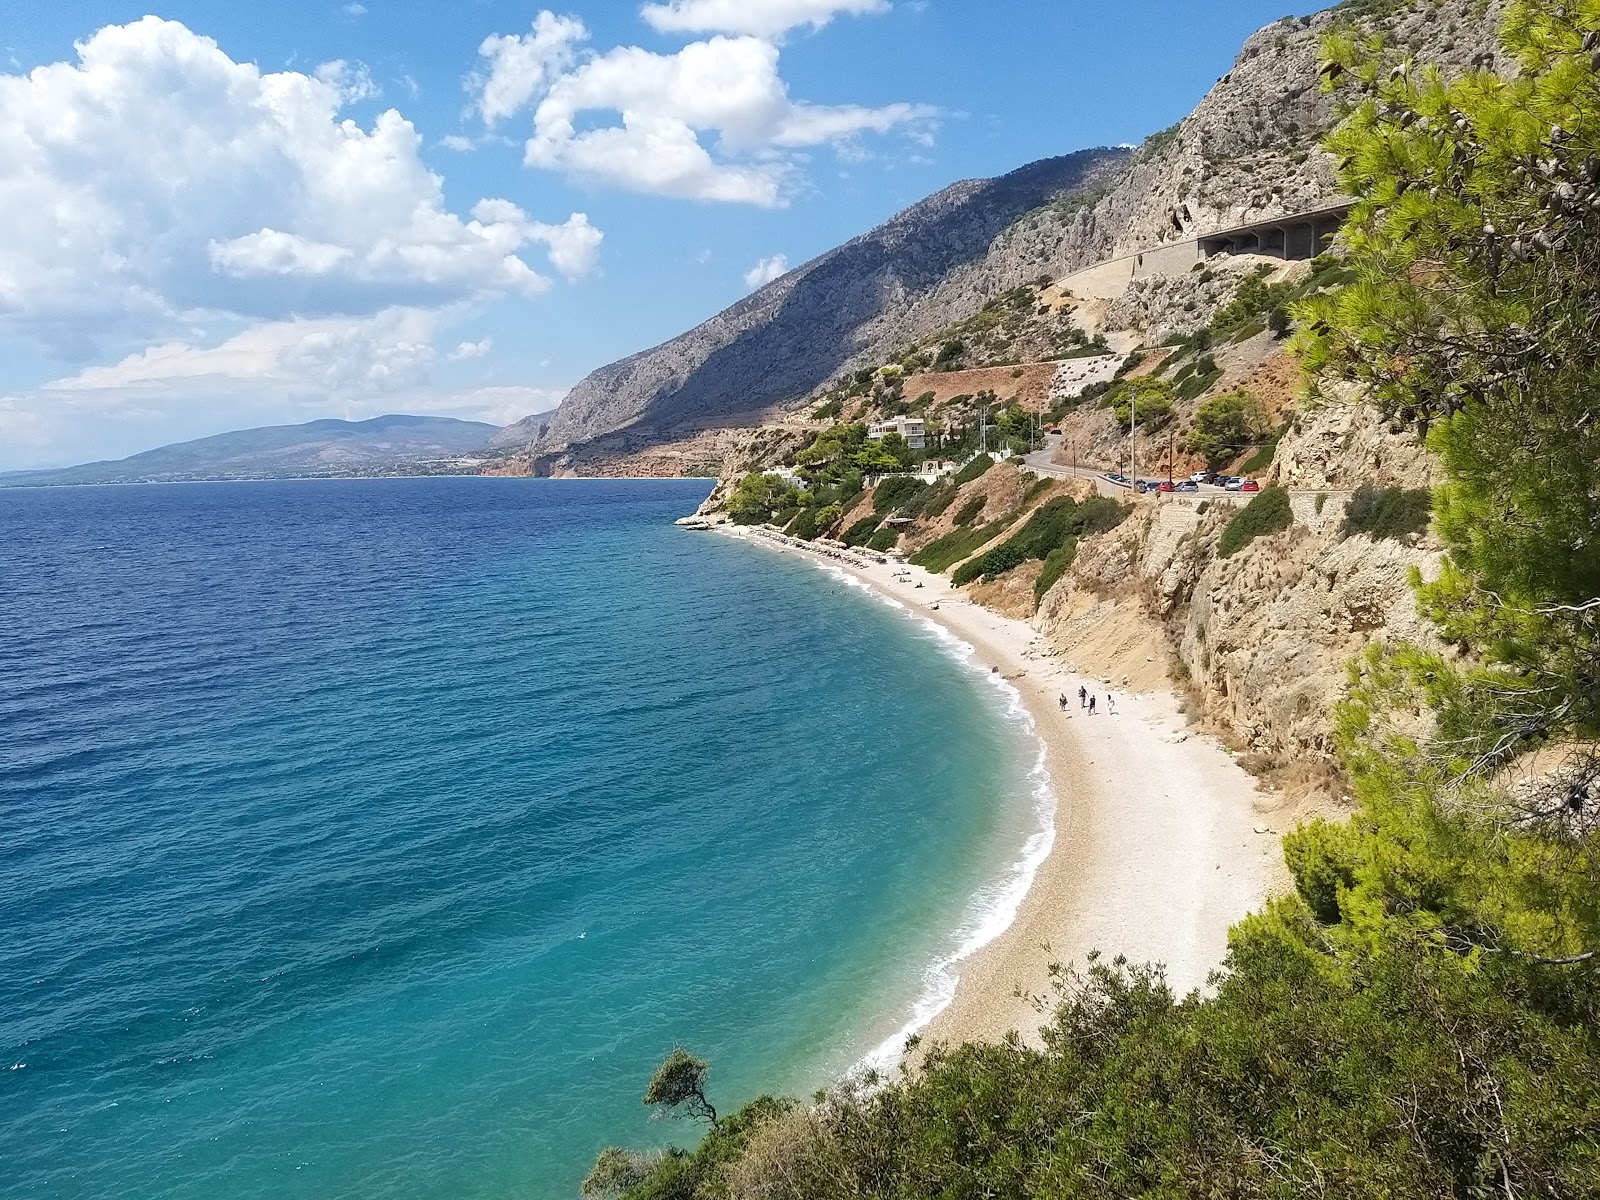 Kakias beach'in fotoğrafı geniş plaj ile birlikte